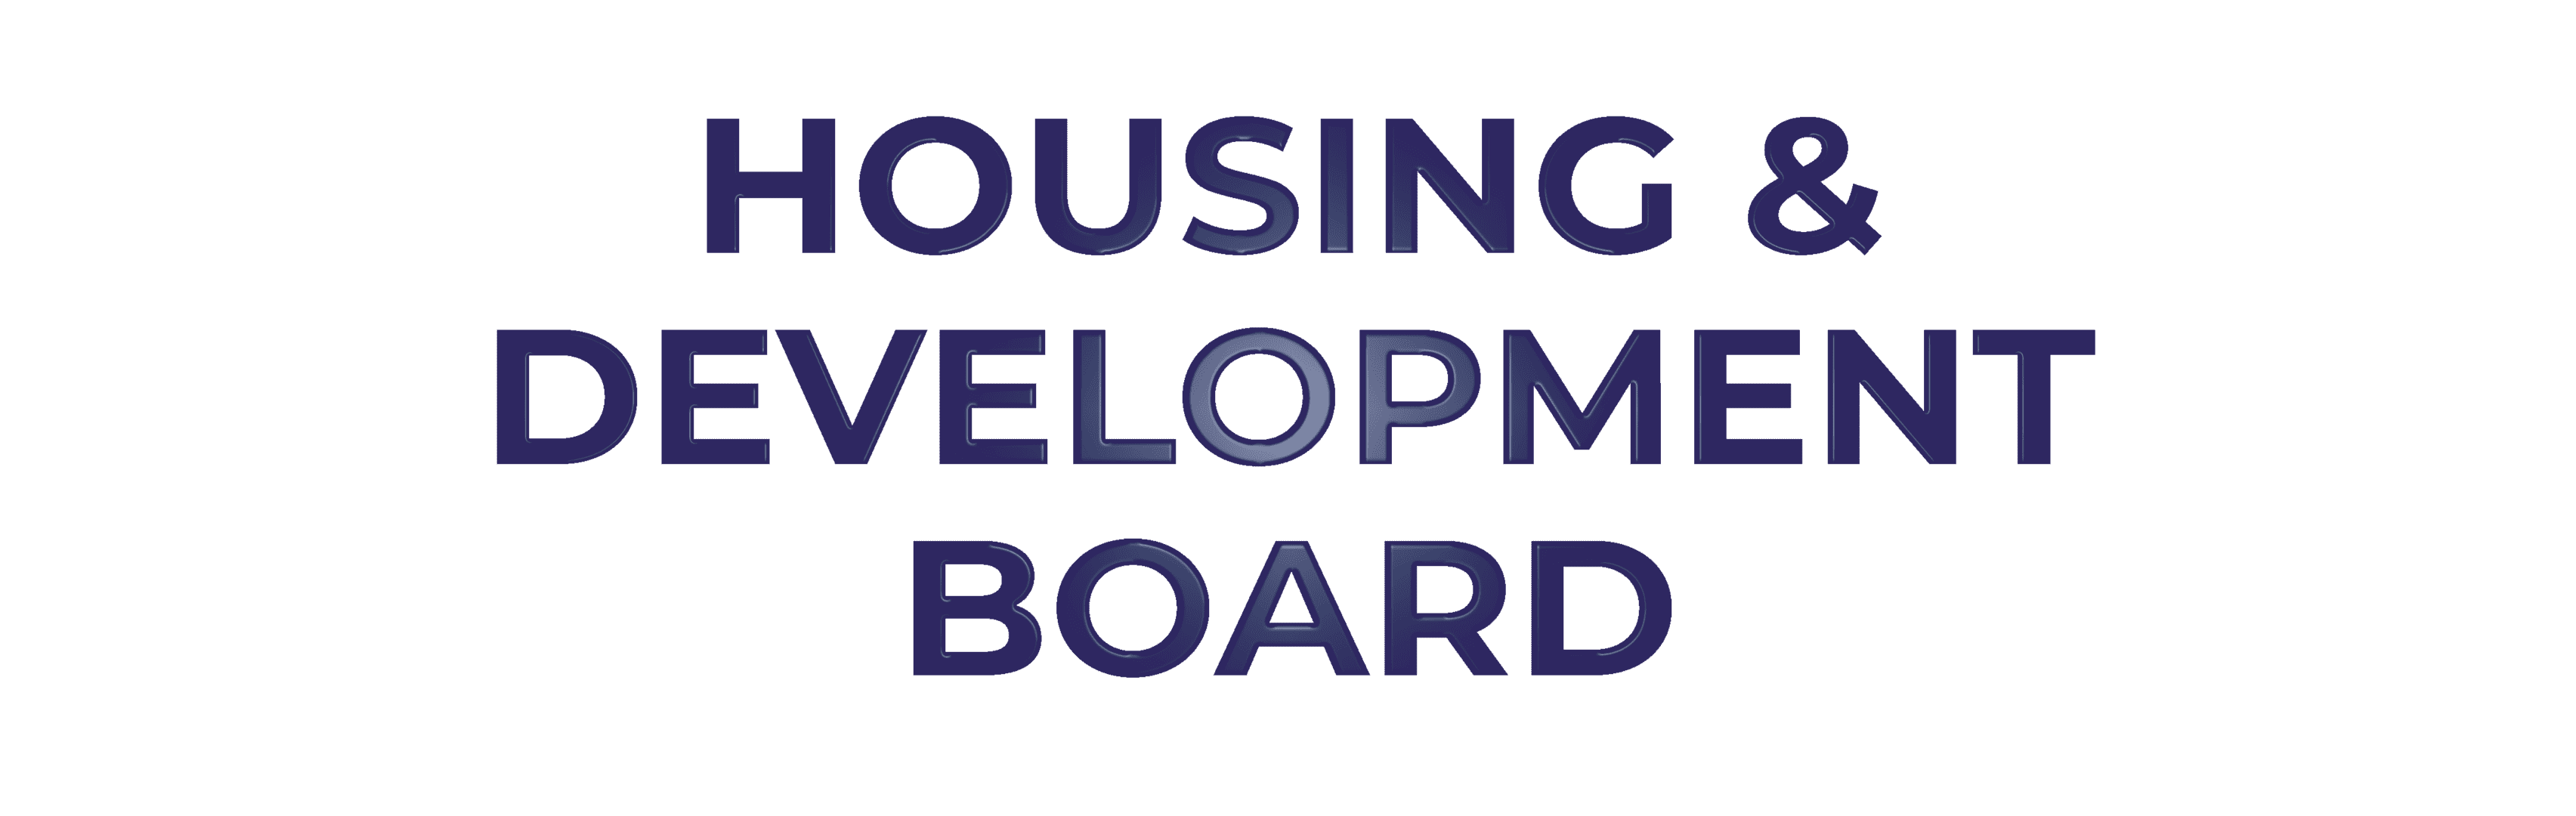 Housing & Development Board Client